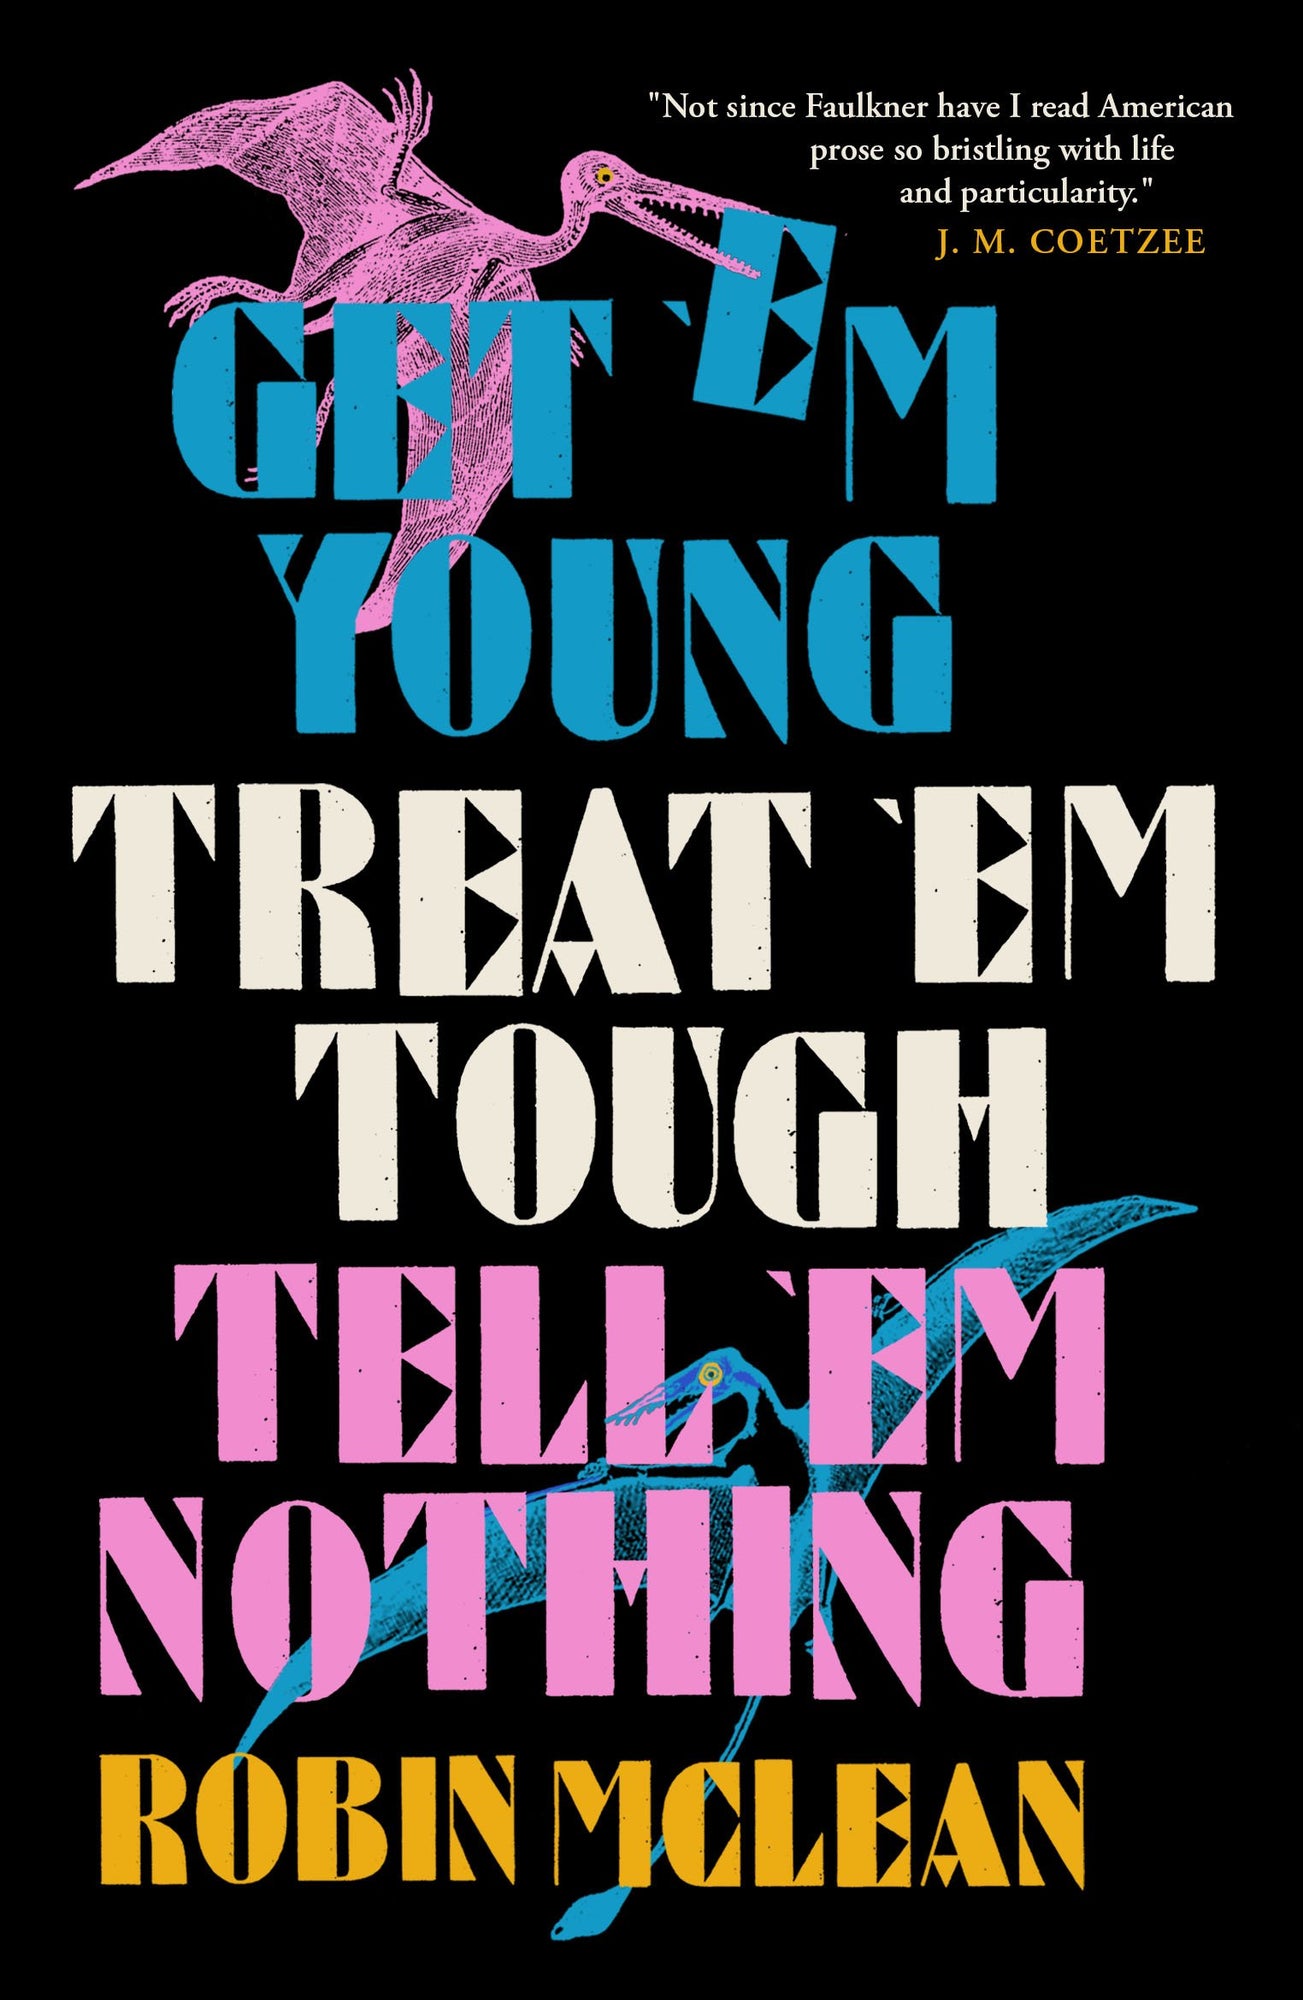 Get ’em Young, Treat ’em Tough, Tell ’em Nothing